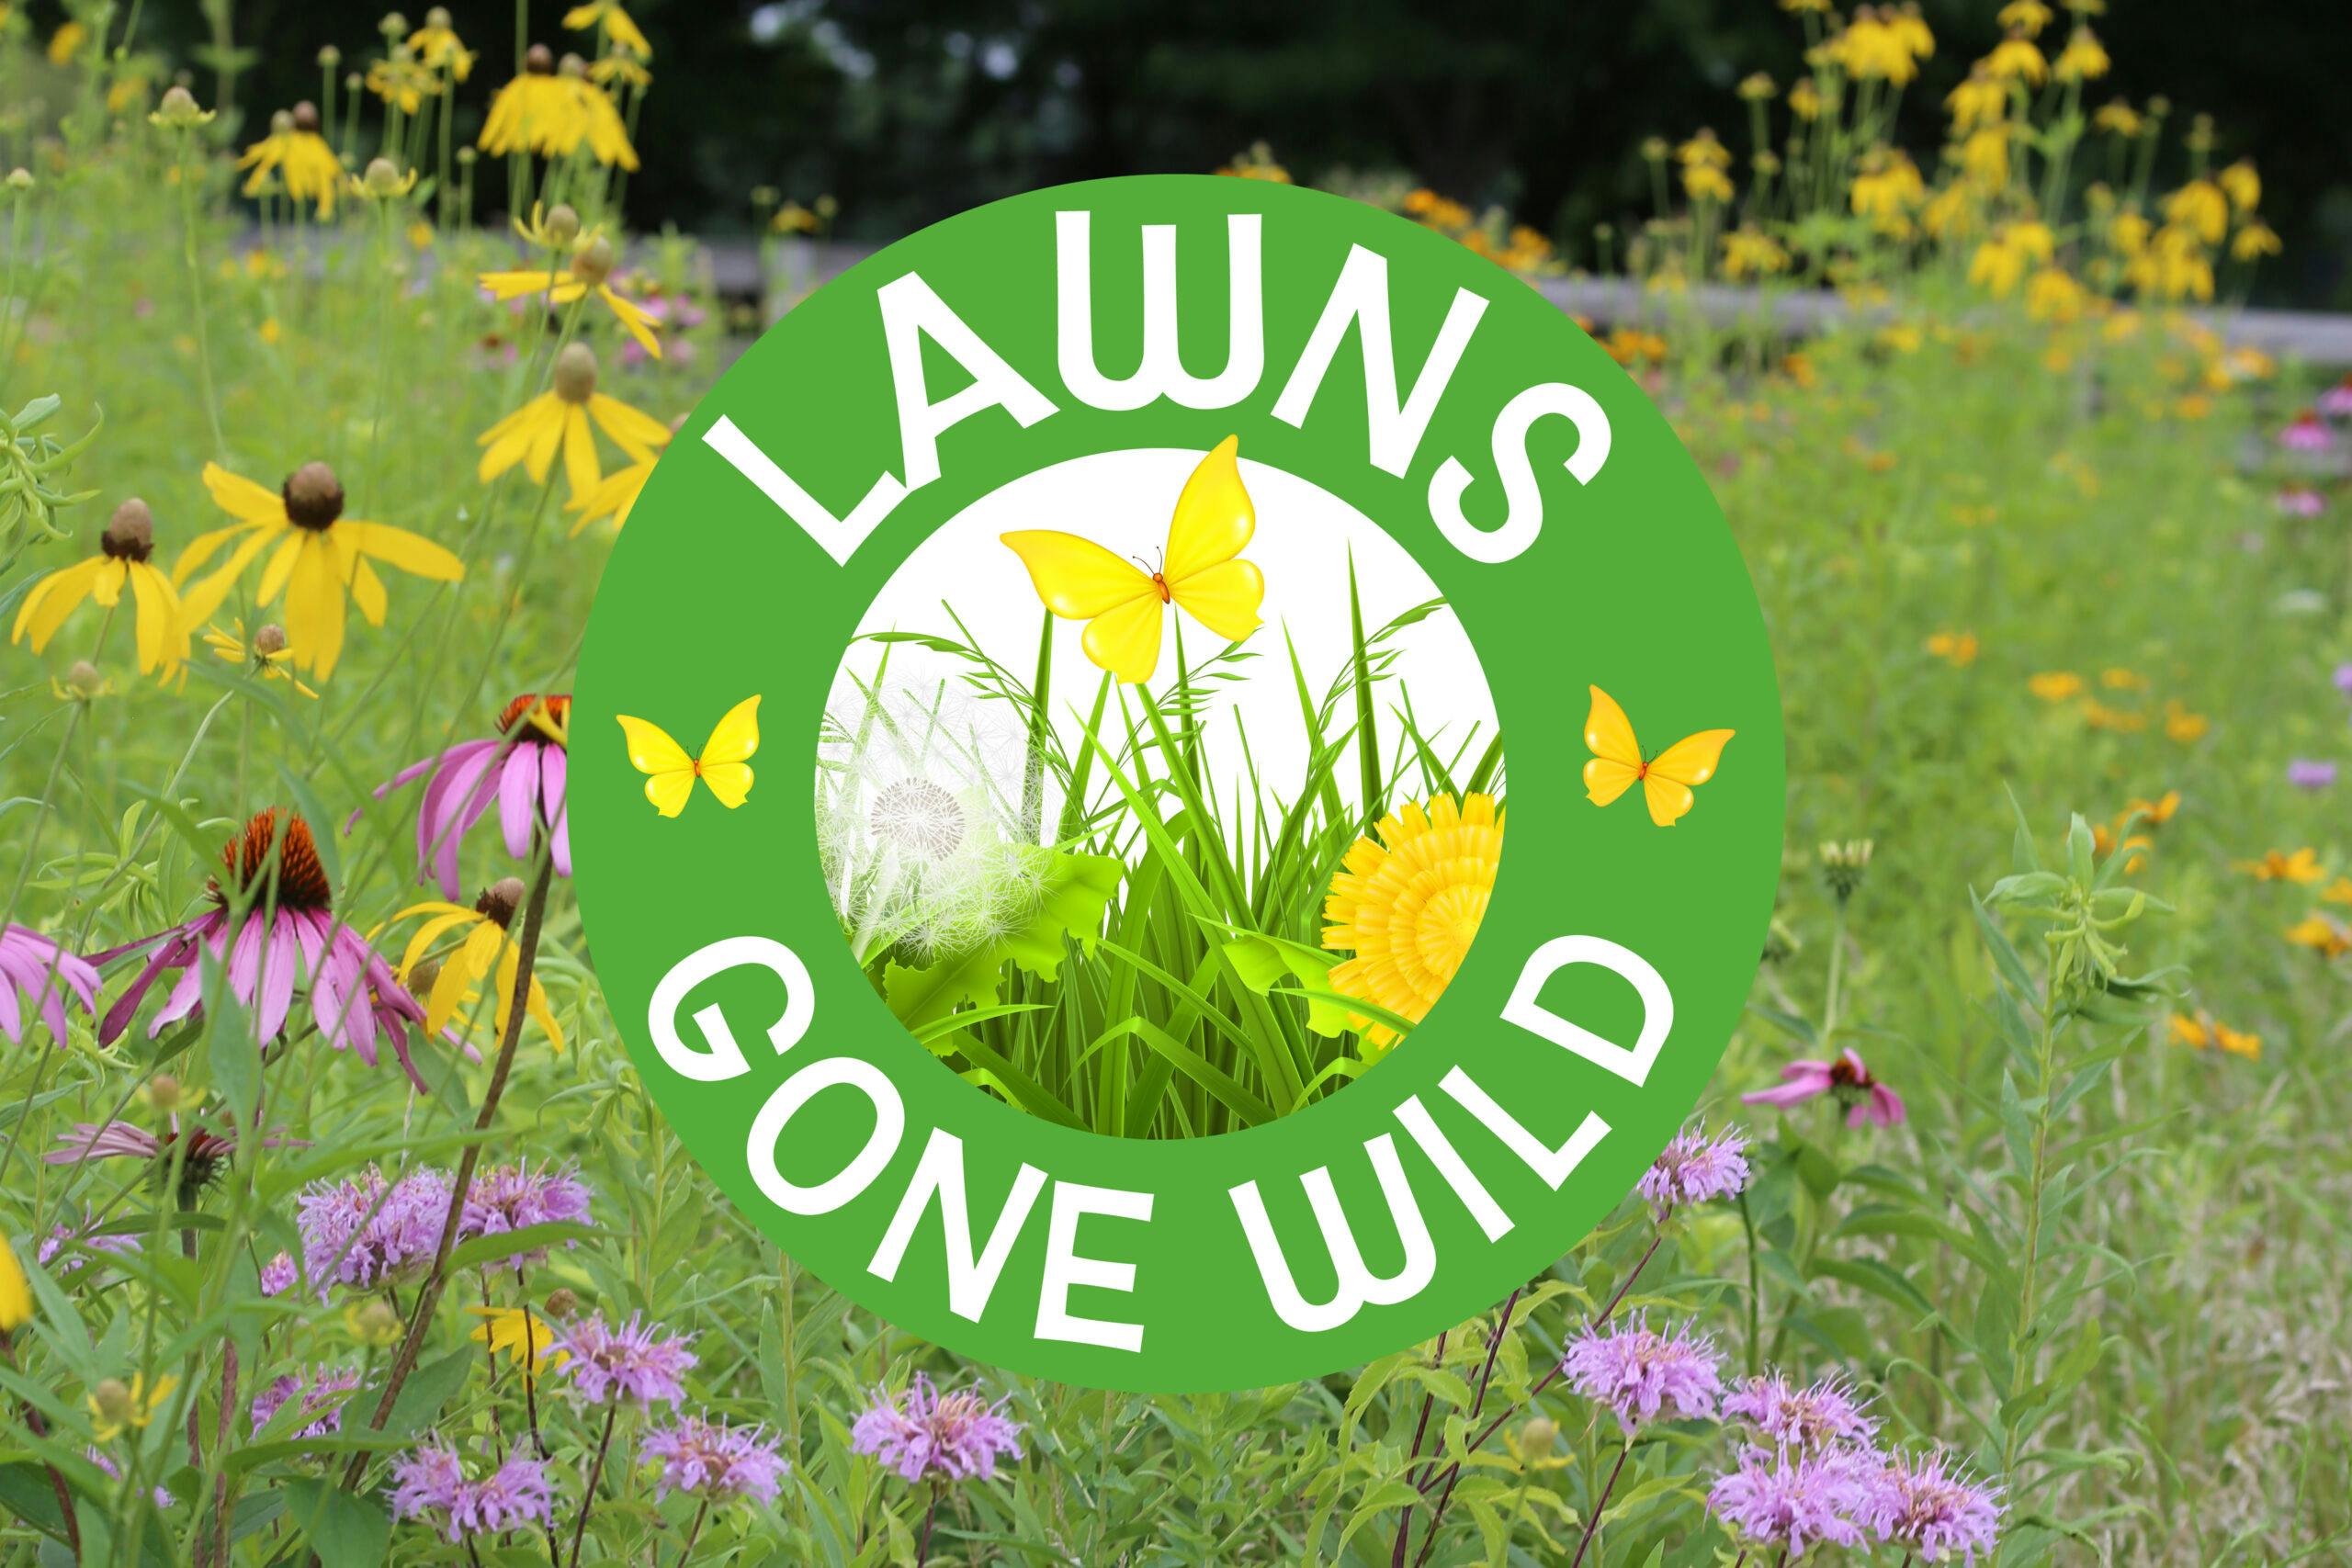 lawns-gone-wold-logo